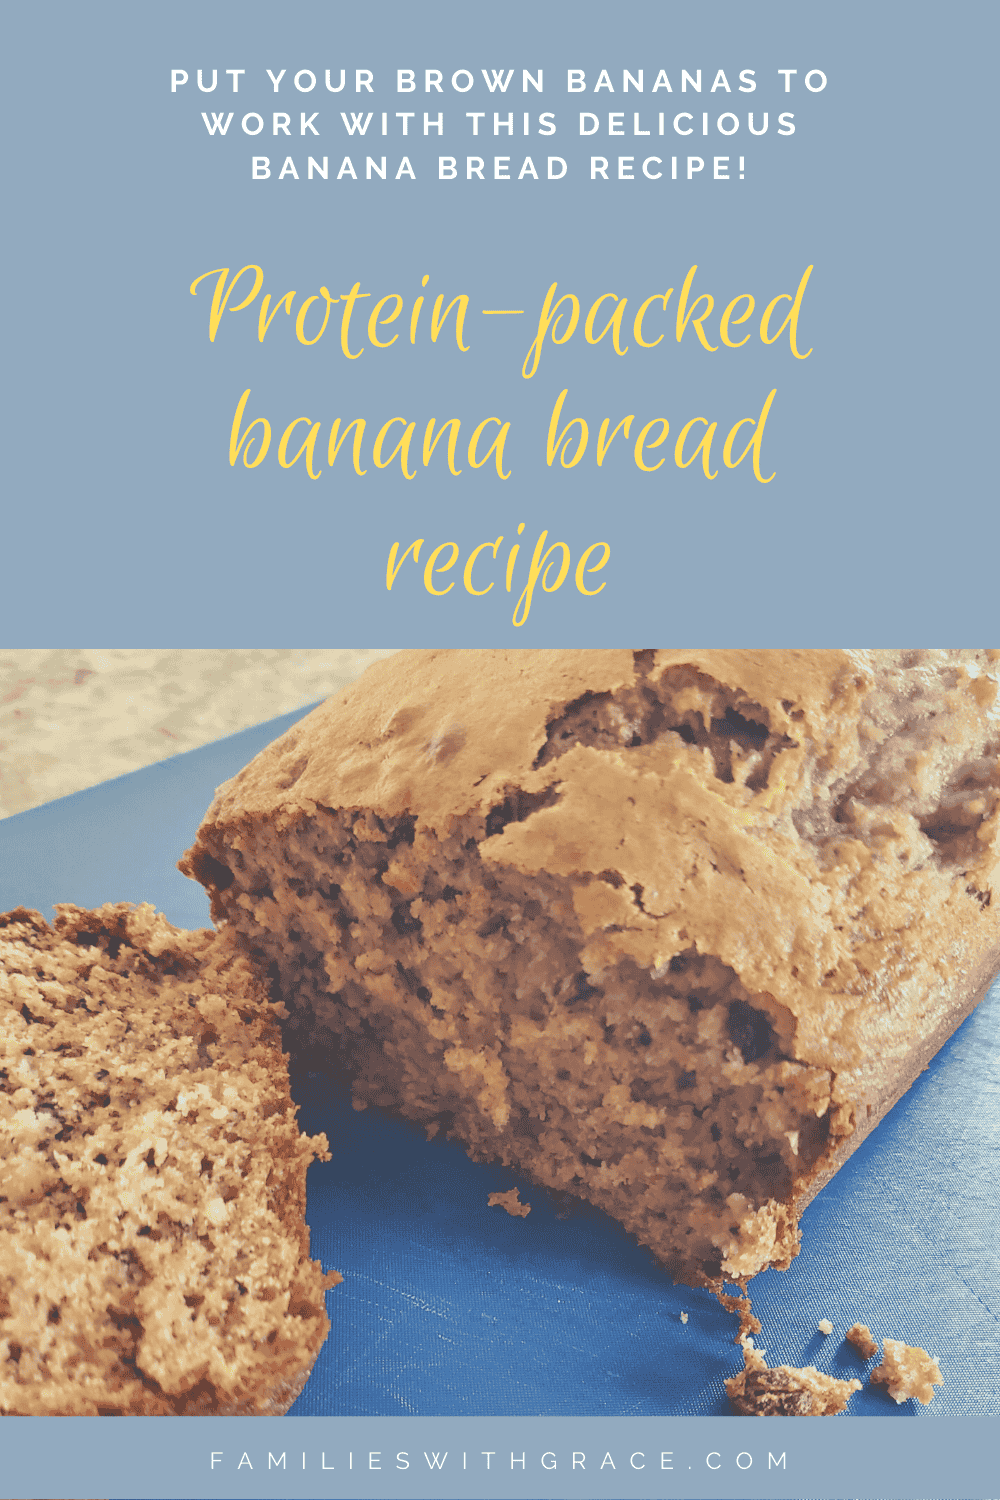 Protein-packed banana bread recipe